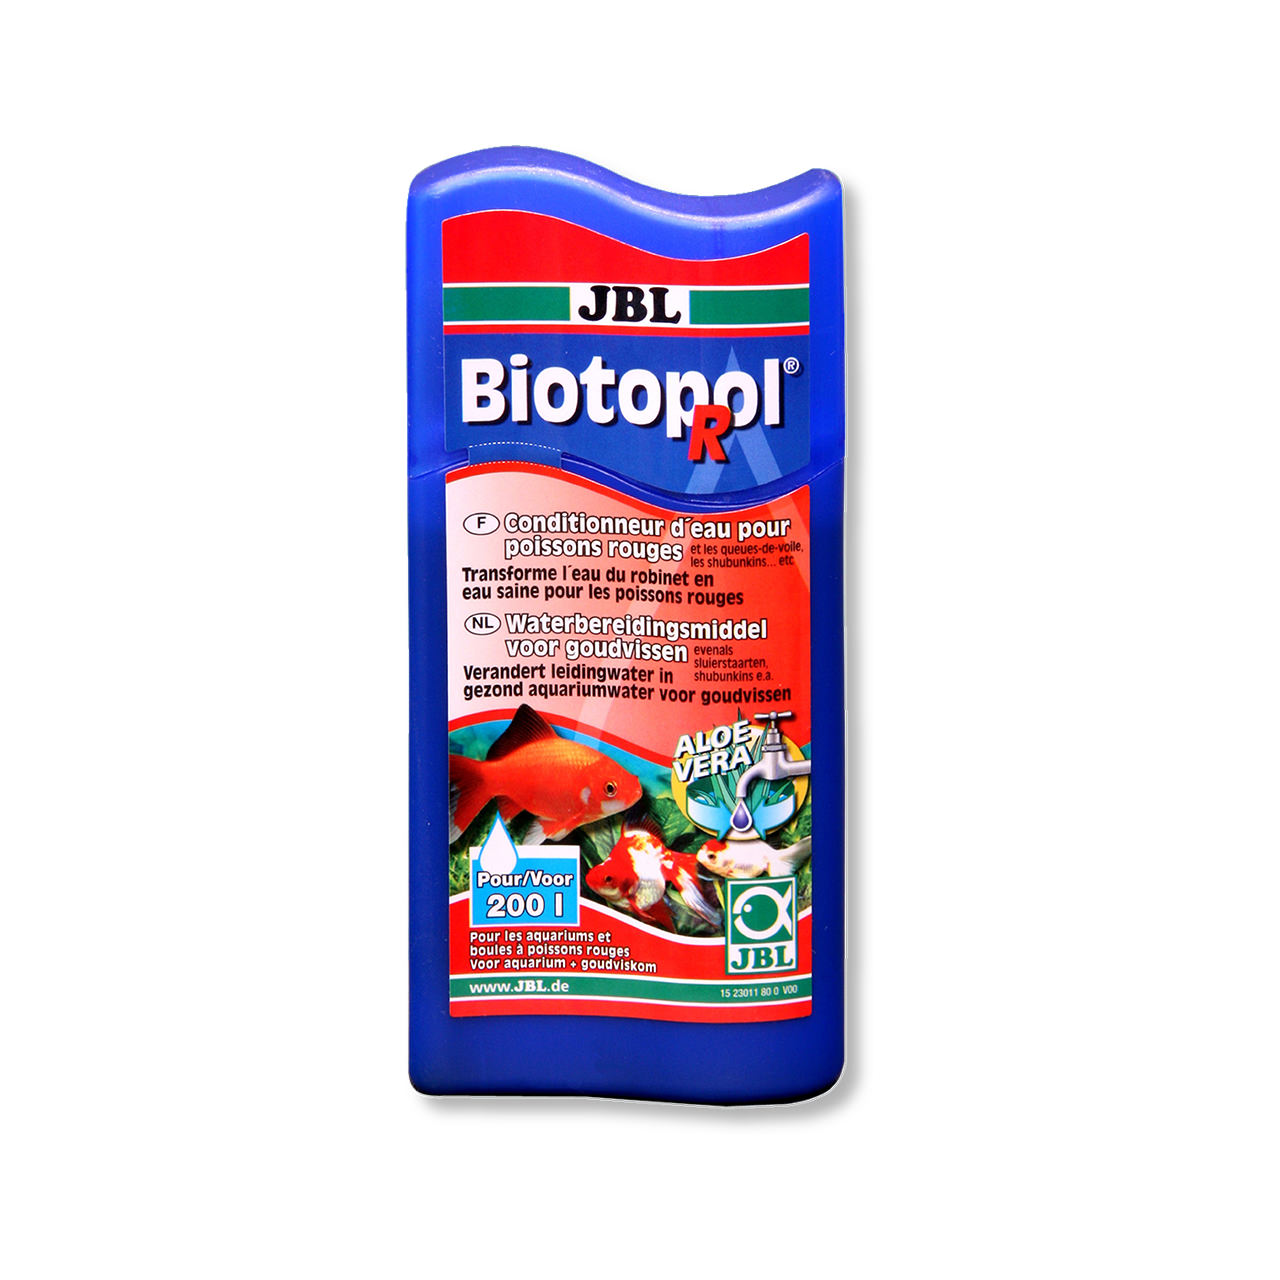 JBL Biotopol R